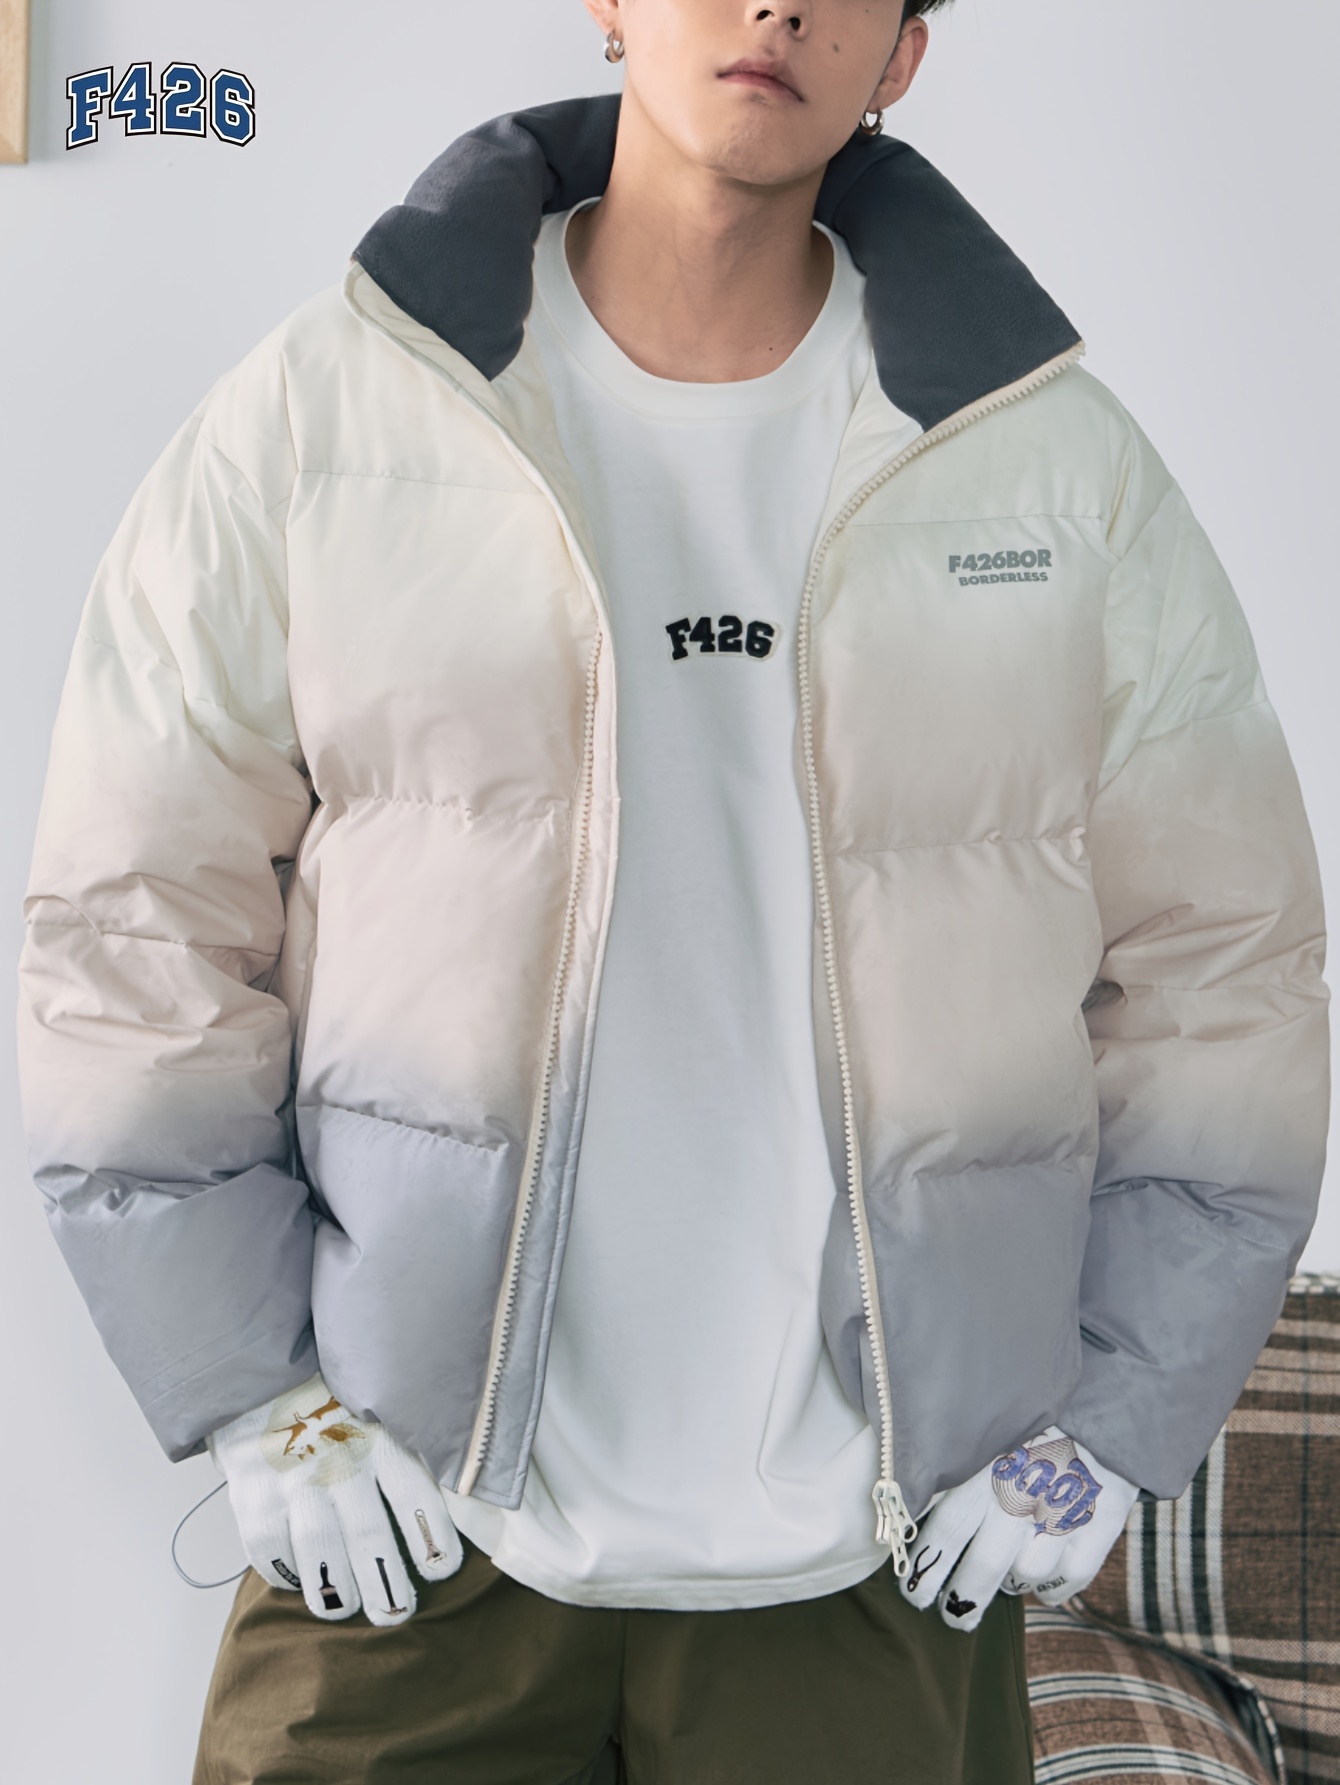 * Duck Down Coat, Men's Gradient Warm Loose Fit Zip Up Puffer Jacket For  Fall Winter Outdoor Activities